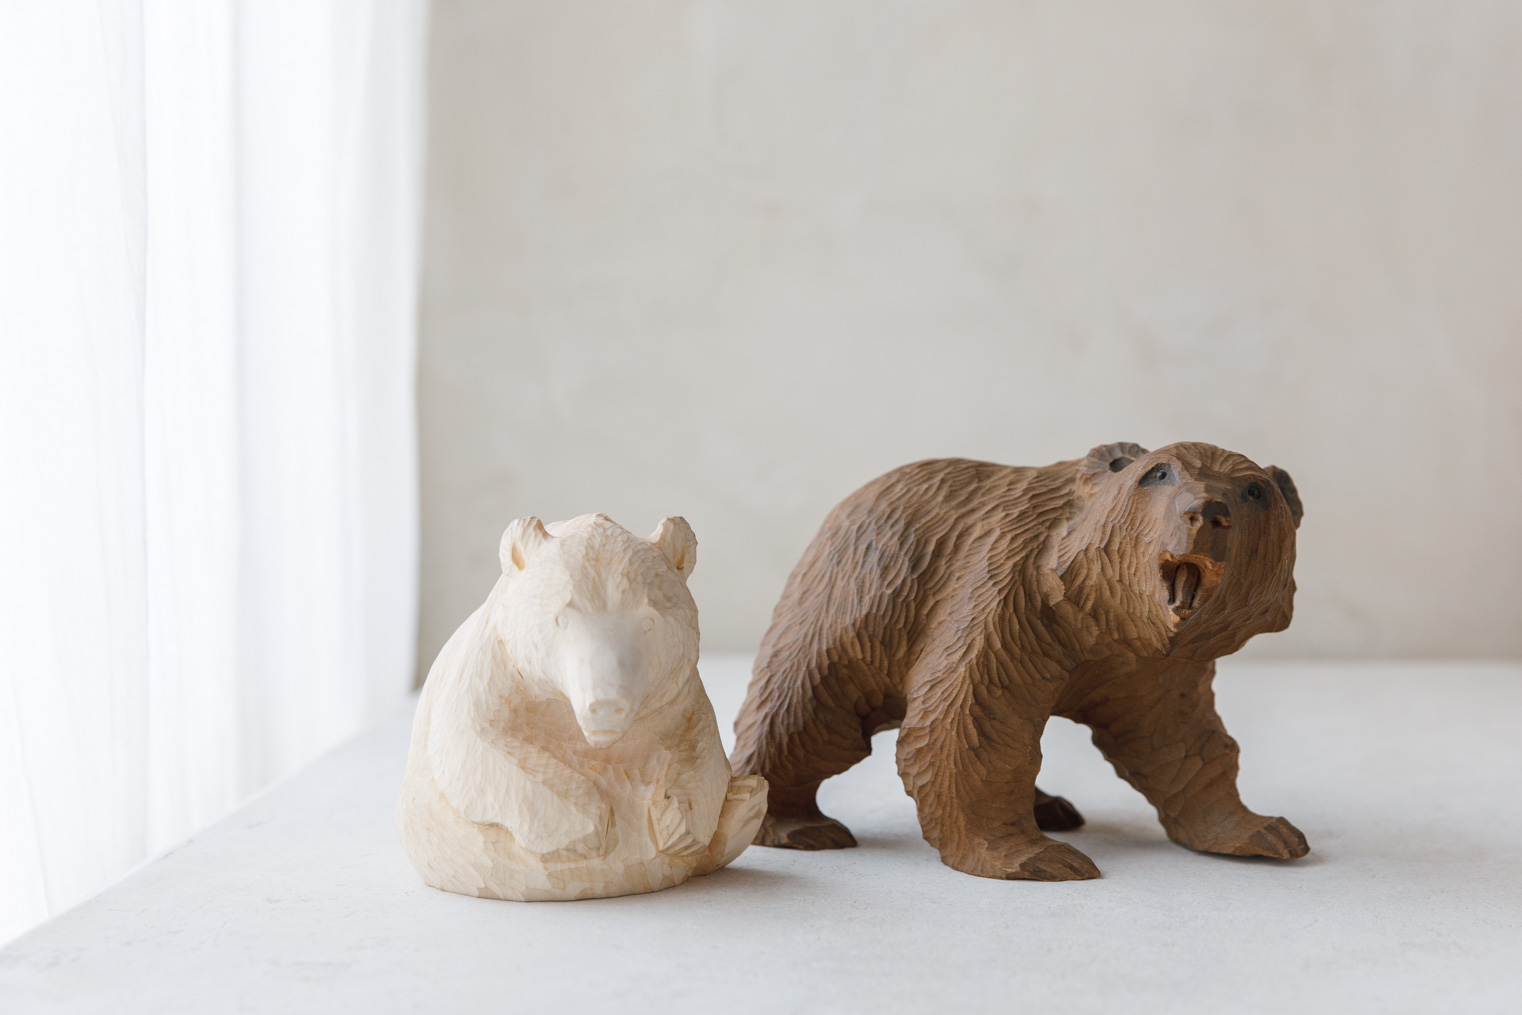 木彫りの熊が入荷しました》 | Eckepunkt | エッケプンクト【自由が丘 